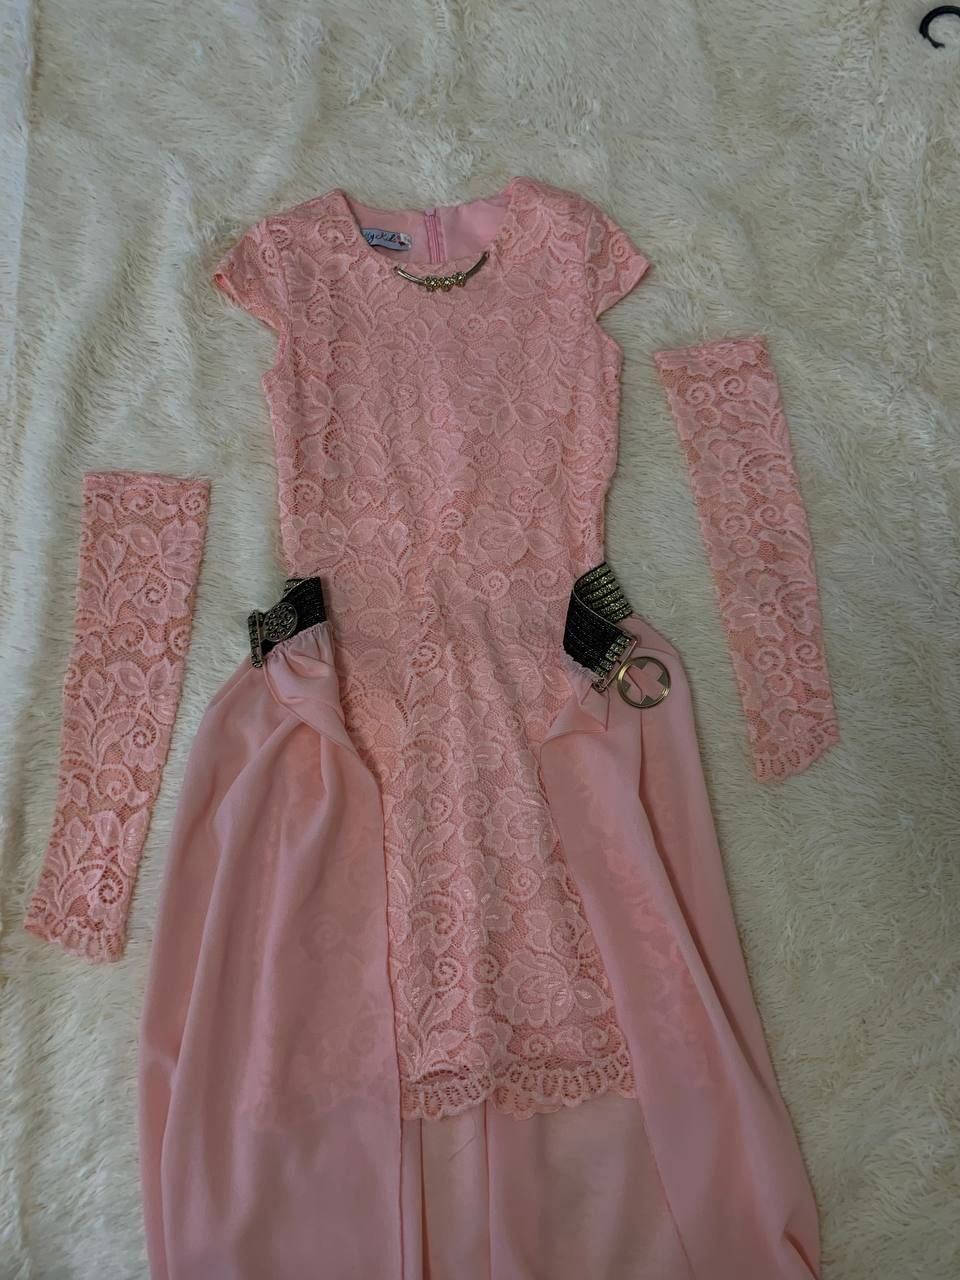 Сукня дитяча рожева